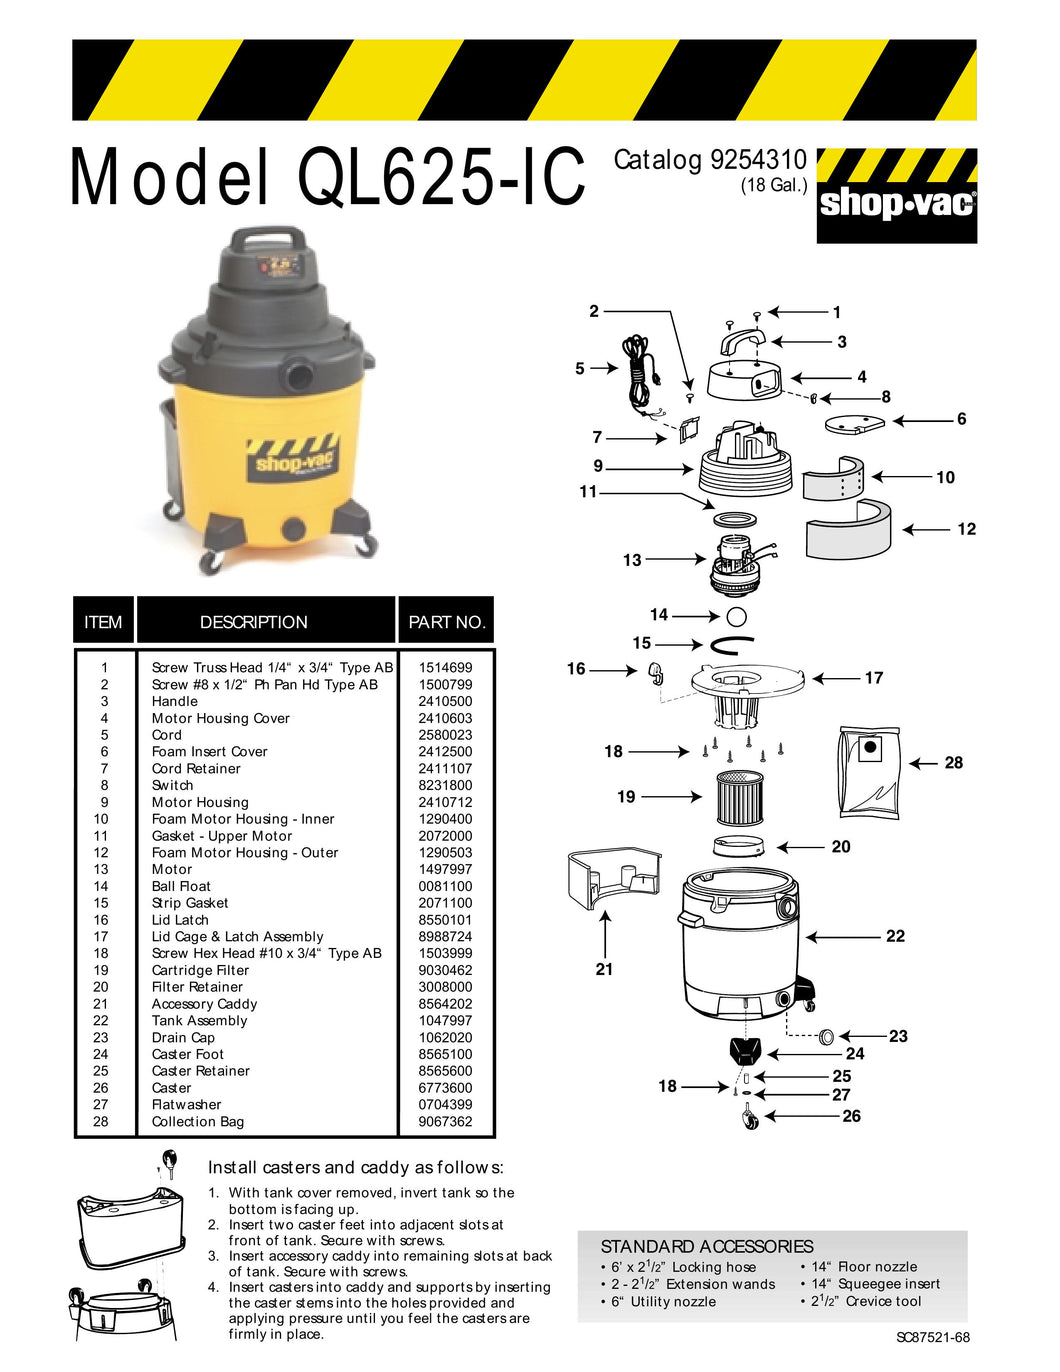 Shop-Vac Parts List for QL625-IC Models (18 Gallon* Yellow / Black Industrial Vac)